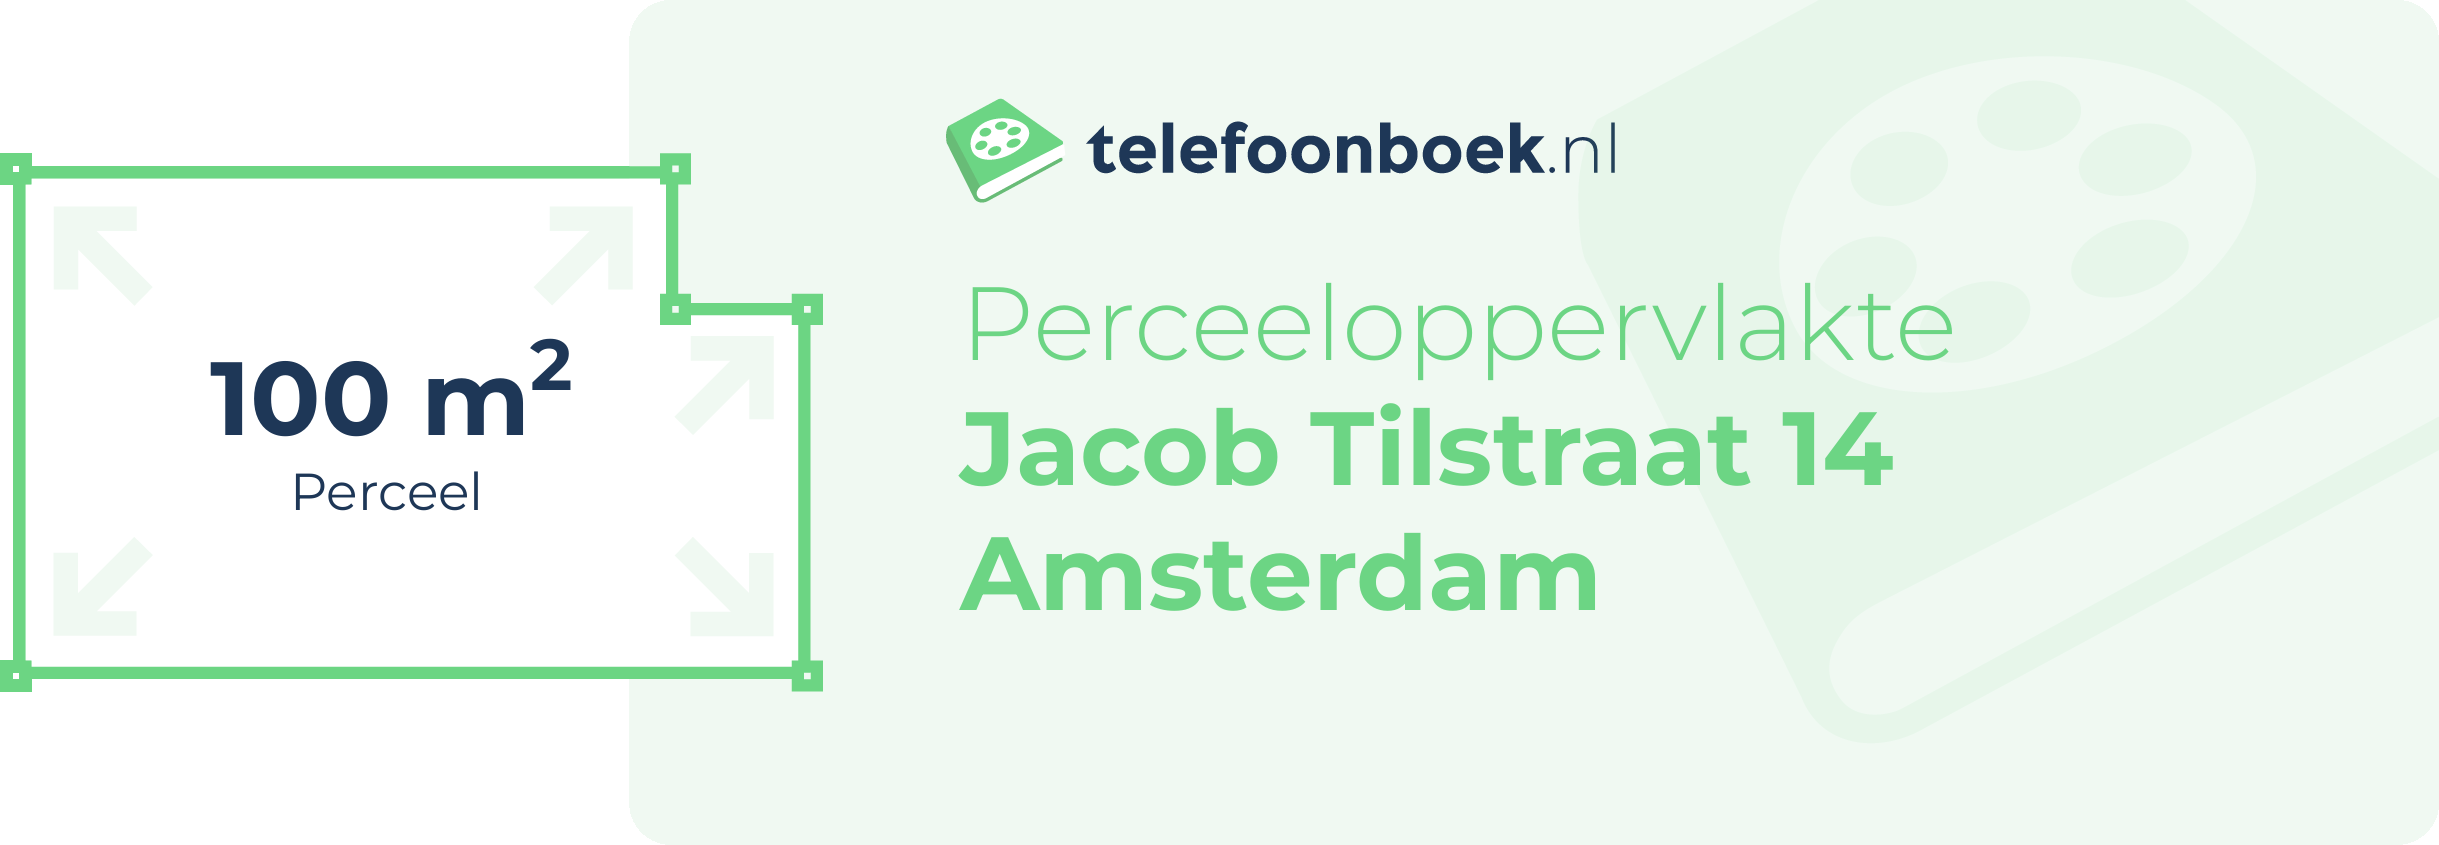 Perceeloppervlakte Jacob Tilstraat 14 Amsterdam